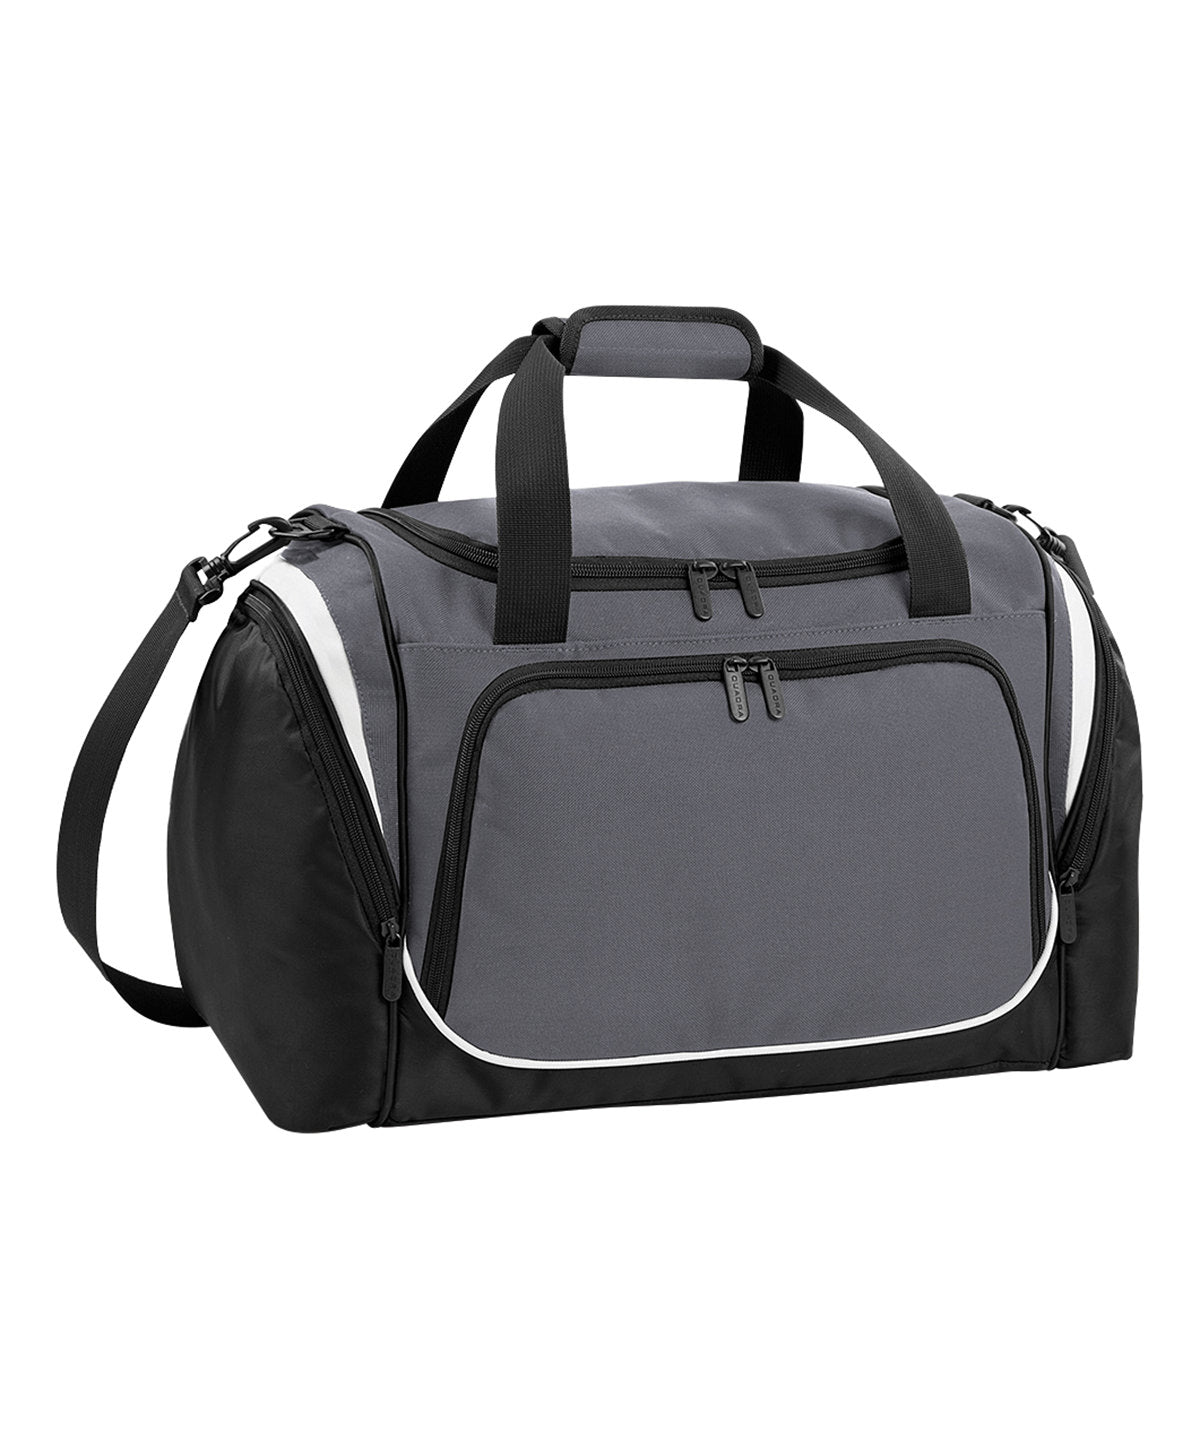 Töskur - Pro Team Locker Bag